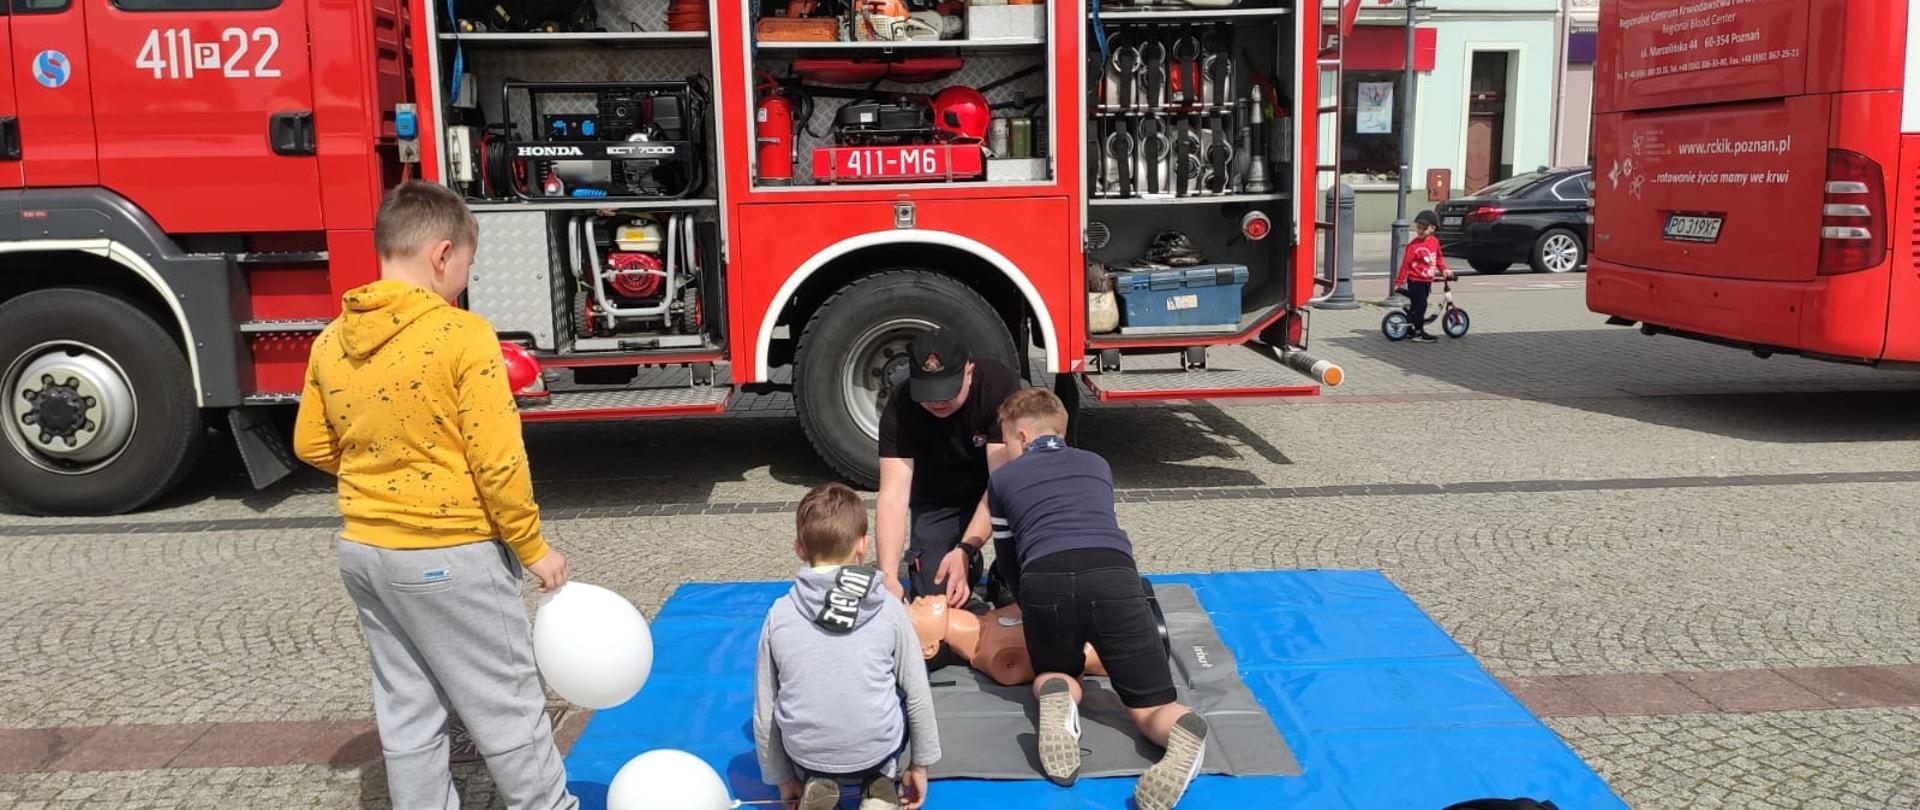 Strażak uczy dzieci jak udzielać pierwszej pomocy.